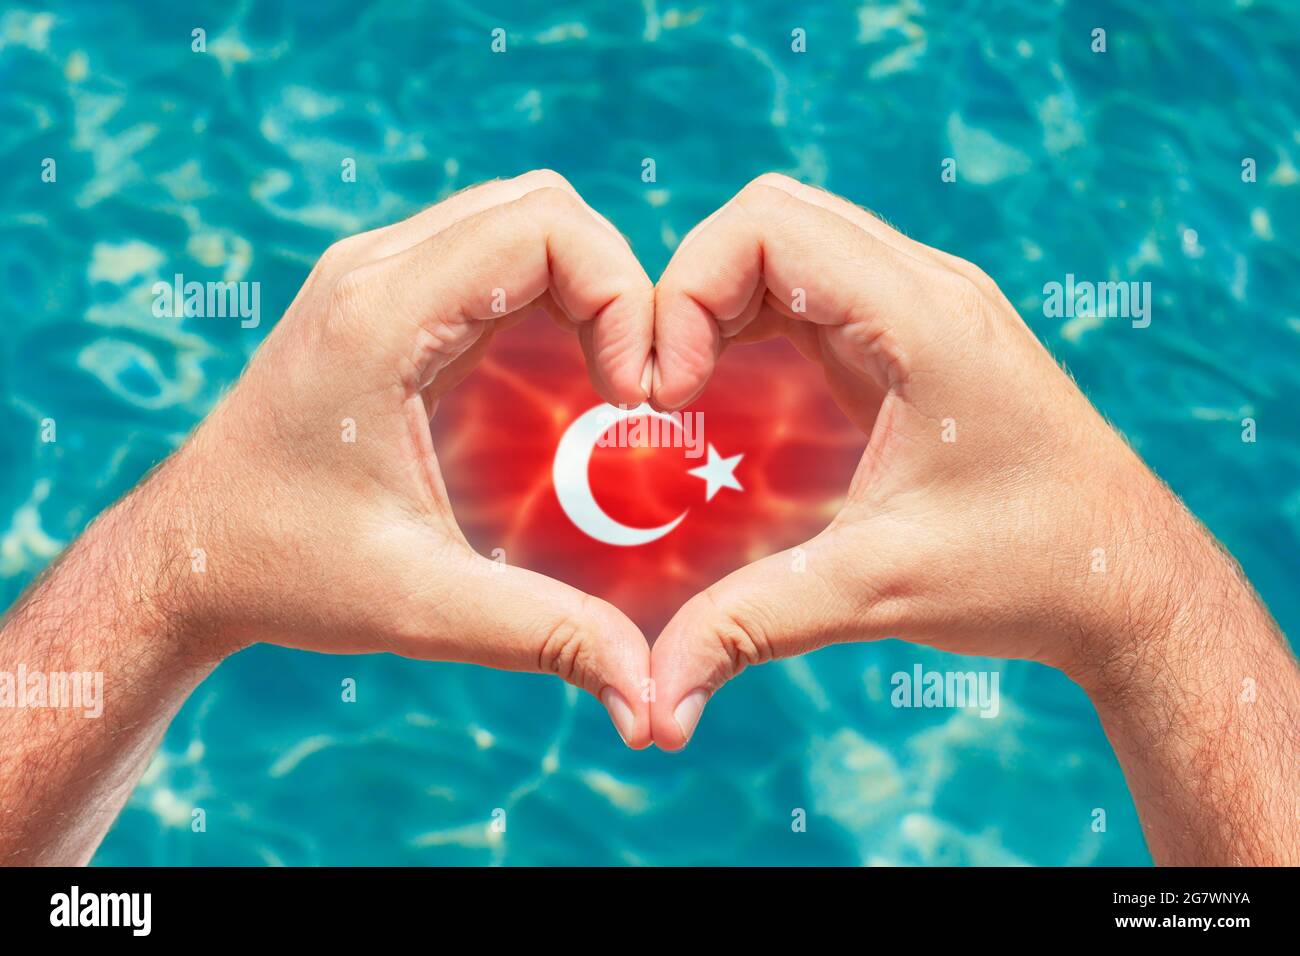 Sommerurlaub in der Türkei Konzept. Männliche Hände, die Herzform mit Türkei-Flagge im Inneren bilden. Wunderschönes kristallklares türkisfarbenes Wasser mit Ätzstoffen. Stockfoto